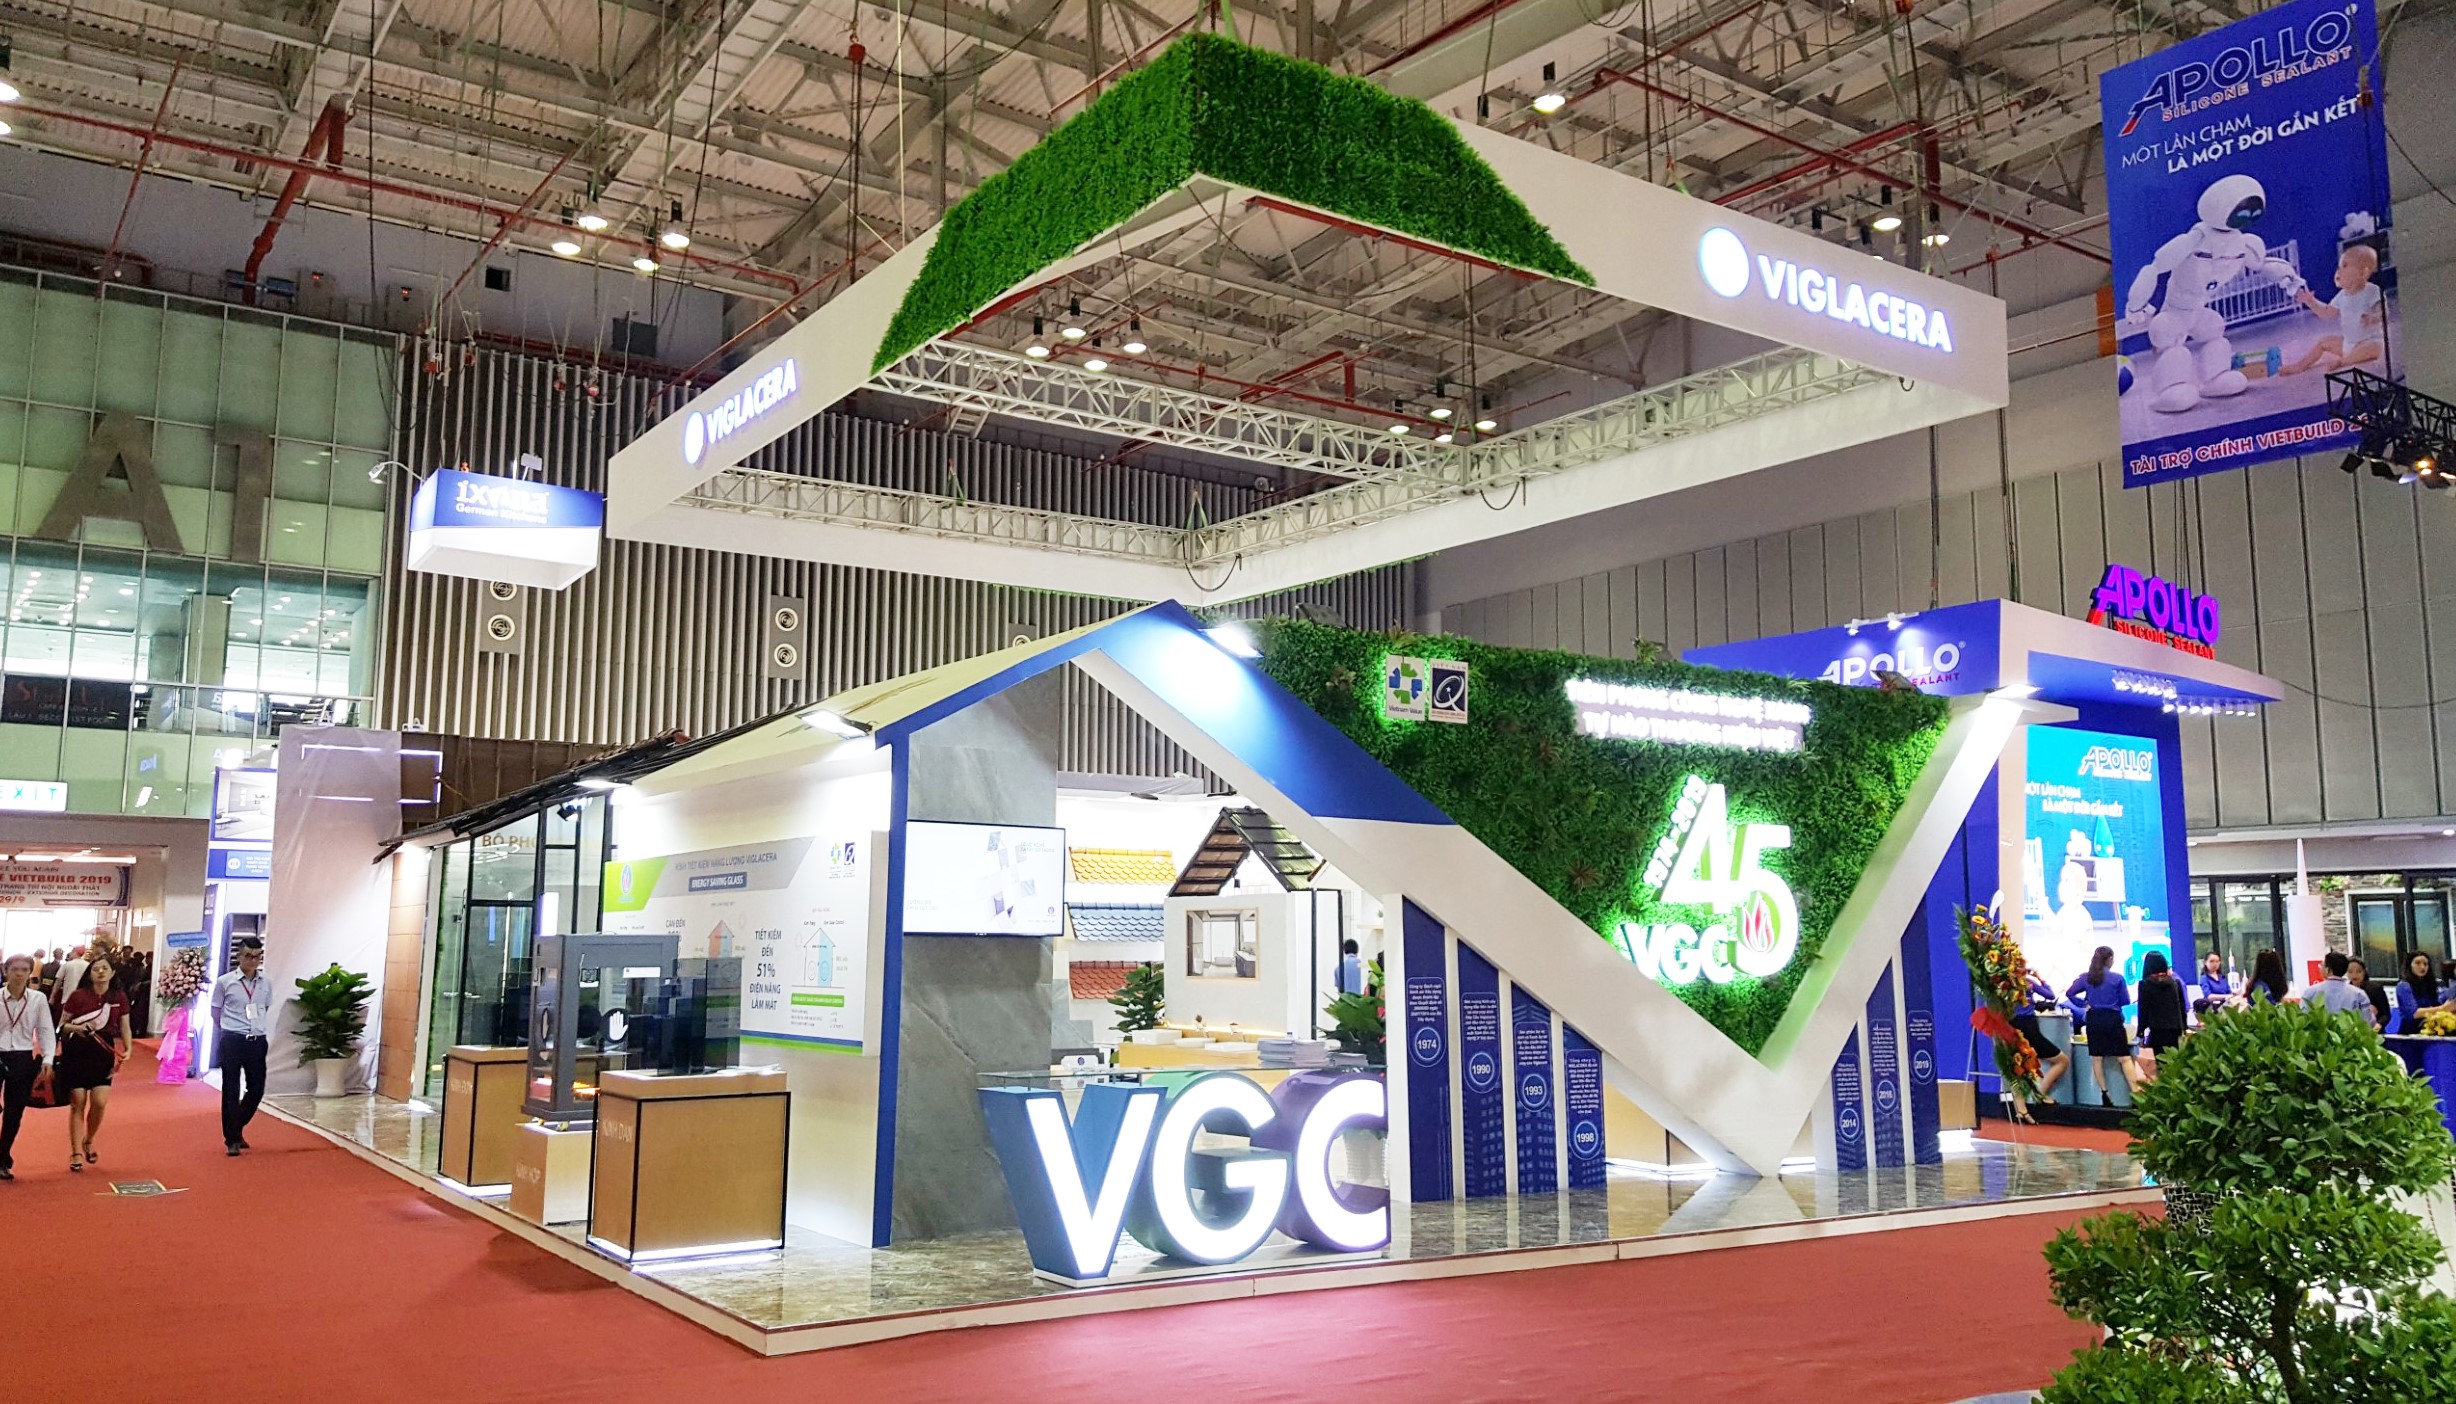 Gạch ốp lát cao cấp Color body lần đầu ra mắt là điểm nhấn của Viglacera tại Vietbuild Hồ Chí Minh 2019